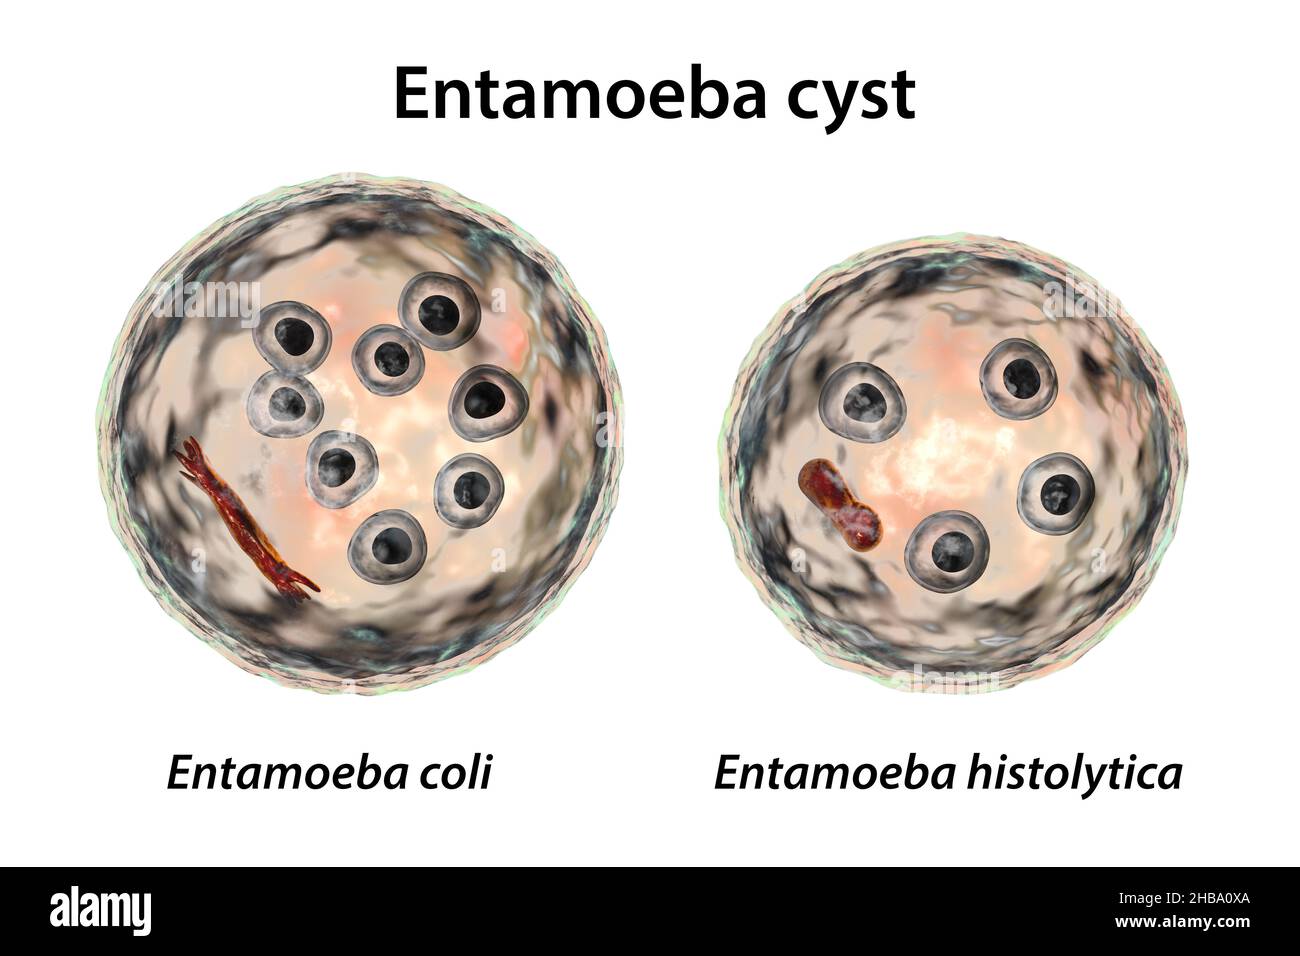 Zysten von Entamoeba-Protozoen, E. coli und E. histolityca, Computerdarstellung. E. coli ist eine nicht pathogene Amöbe, seine Zyste beträgt 15-25 Mikrometer, hat acht Kerne und einen chromatoidalen Balken, der mit splitterten Enden (dunkelrot) verlängert ist. E. histolytica ist ein parasitäres Protozoon, das beim Menschen nach der Einnahme von infektiösen Zysten in kontaminierten Lebensmitteln oder Wasser eine amöbische Dysenterie verursacht. Die reife Zyste von E. histolytica ist 10-20 Mikrometer groß, hat vier Kerne und einen gerundeten länglichen chromatoidalen Balken (dunkelrot). Stockfoto